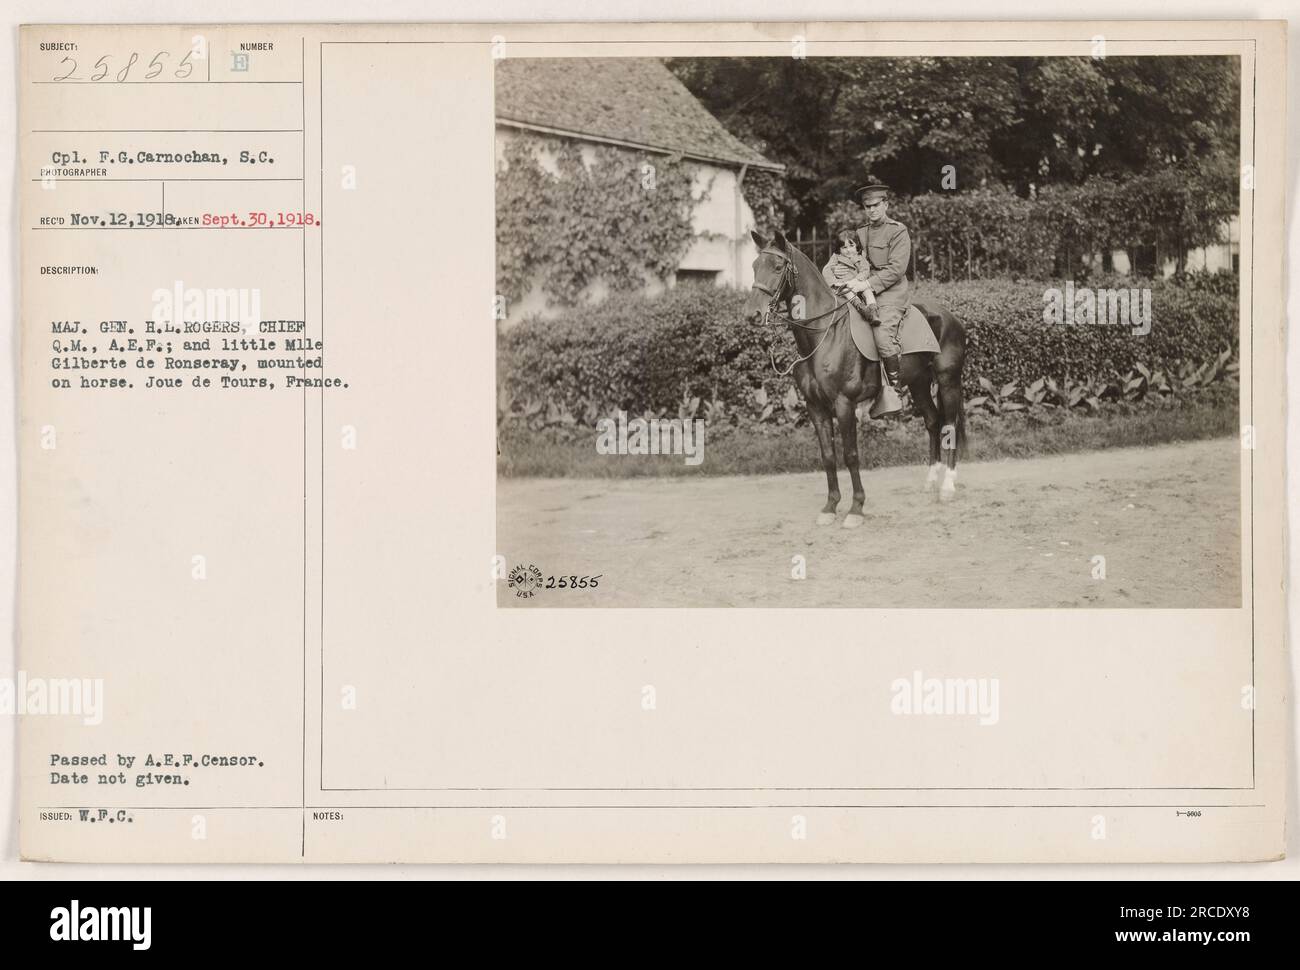 CPL. F.G. Carnochan vom Signalkorps hat das Bild am 30. September 1918 in Joue de Tours in Frankreich aufgenommen. Das Foto zeigt Major General H.L. Rogers, der Oberquartiermeister der A.E.F., zusammen mit Mademoiselle Gilberte de Ronseray, beide auf dem Pferderücken. Das Bild ist Teil der Serie 111-SC-25855, die die amerikanischen Militäraktionen während des Ersten Weltkriegs dokumentiert. Ausstellungsdatum und zusätzliche Angaben nicht verfügbar. Das Foto wurde vom A.E.P. Zensor genehmigt. Stockfoto